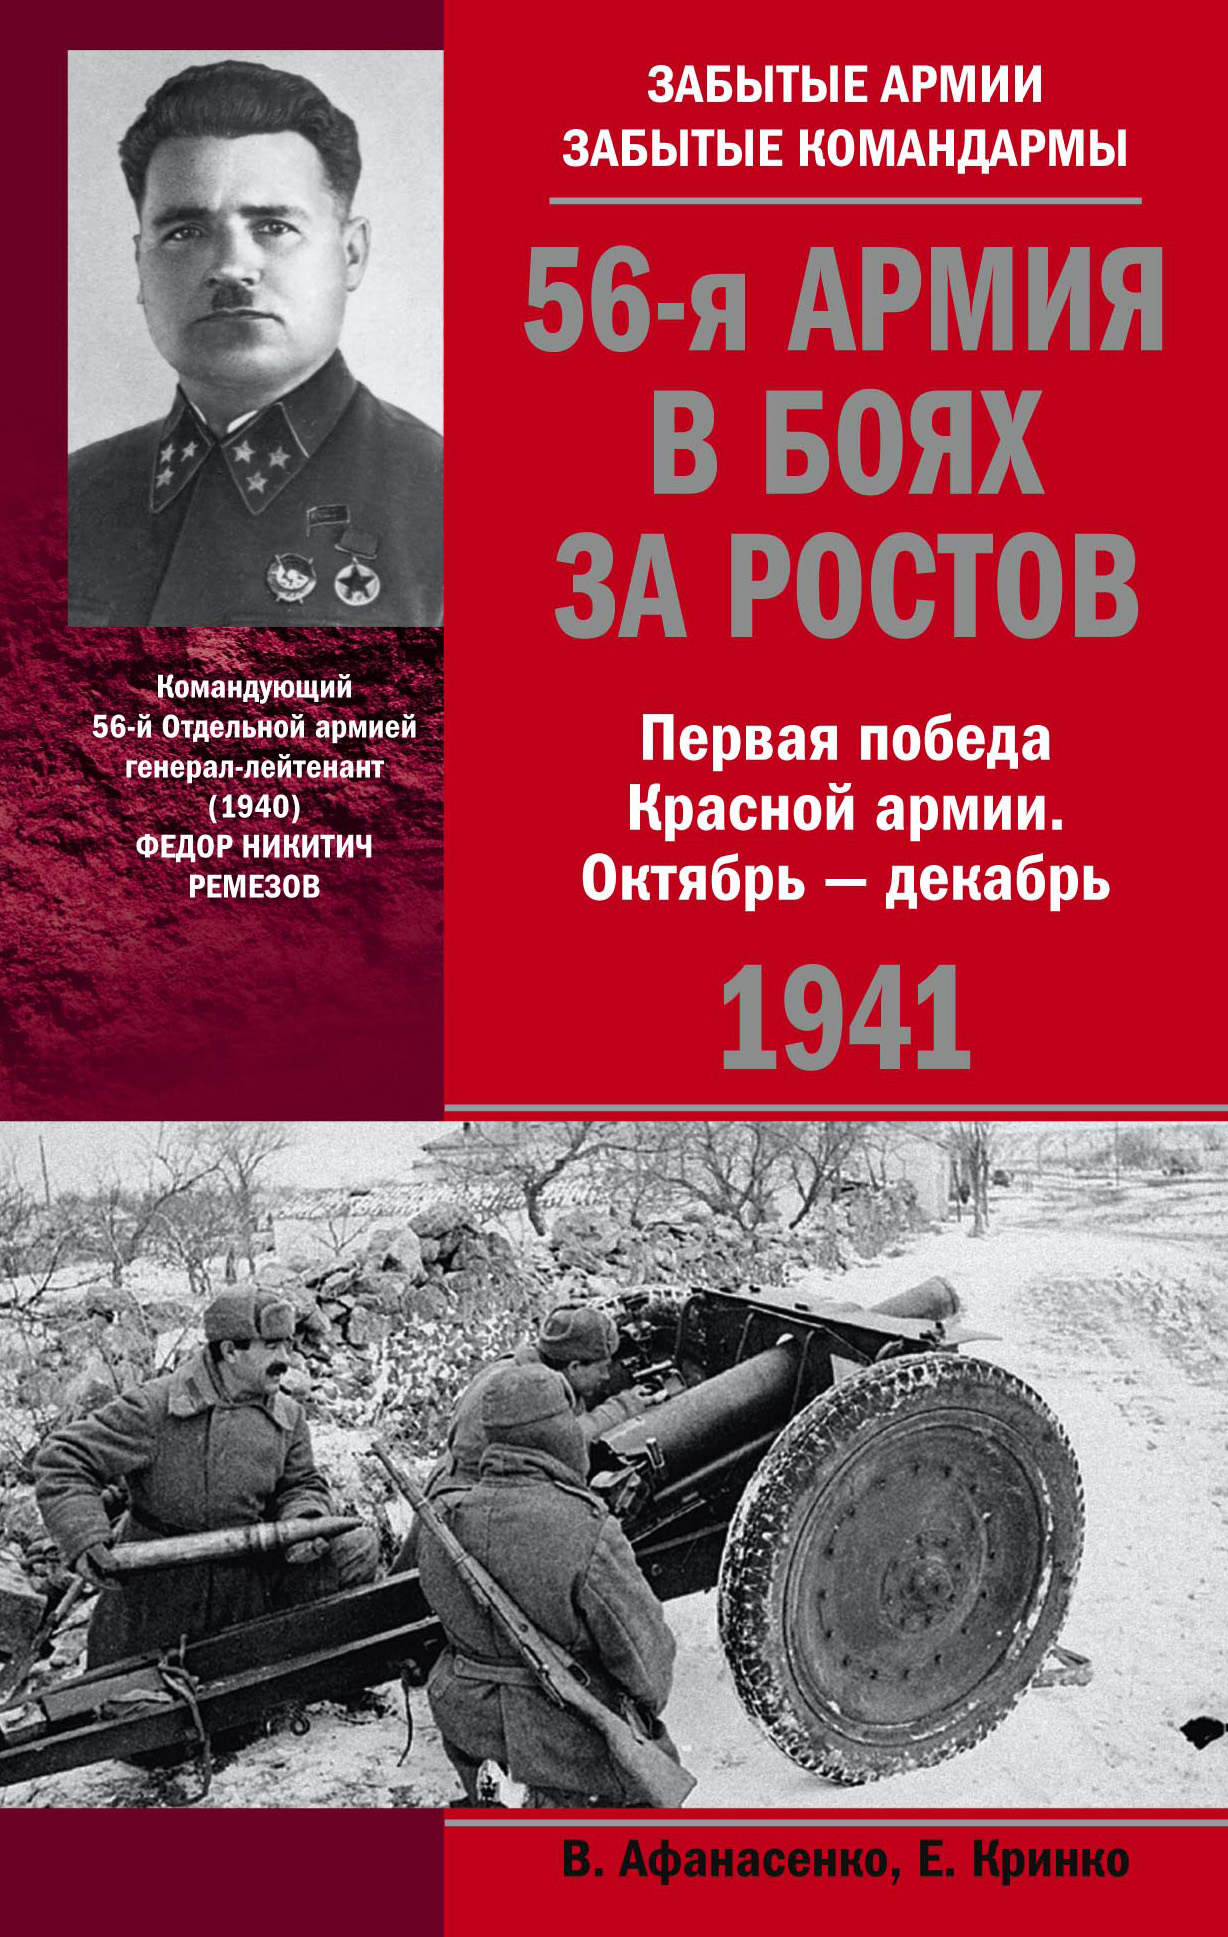 56-я армия в боях за Ростов. Первая победа Красной армии. Октябрь-декабрь 1941